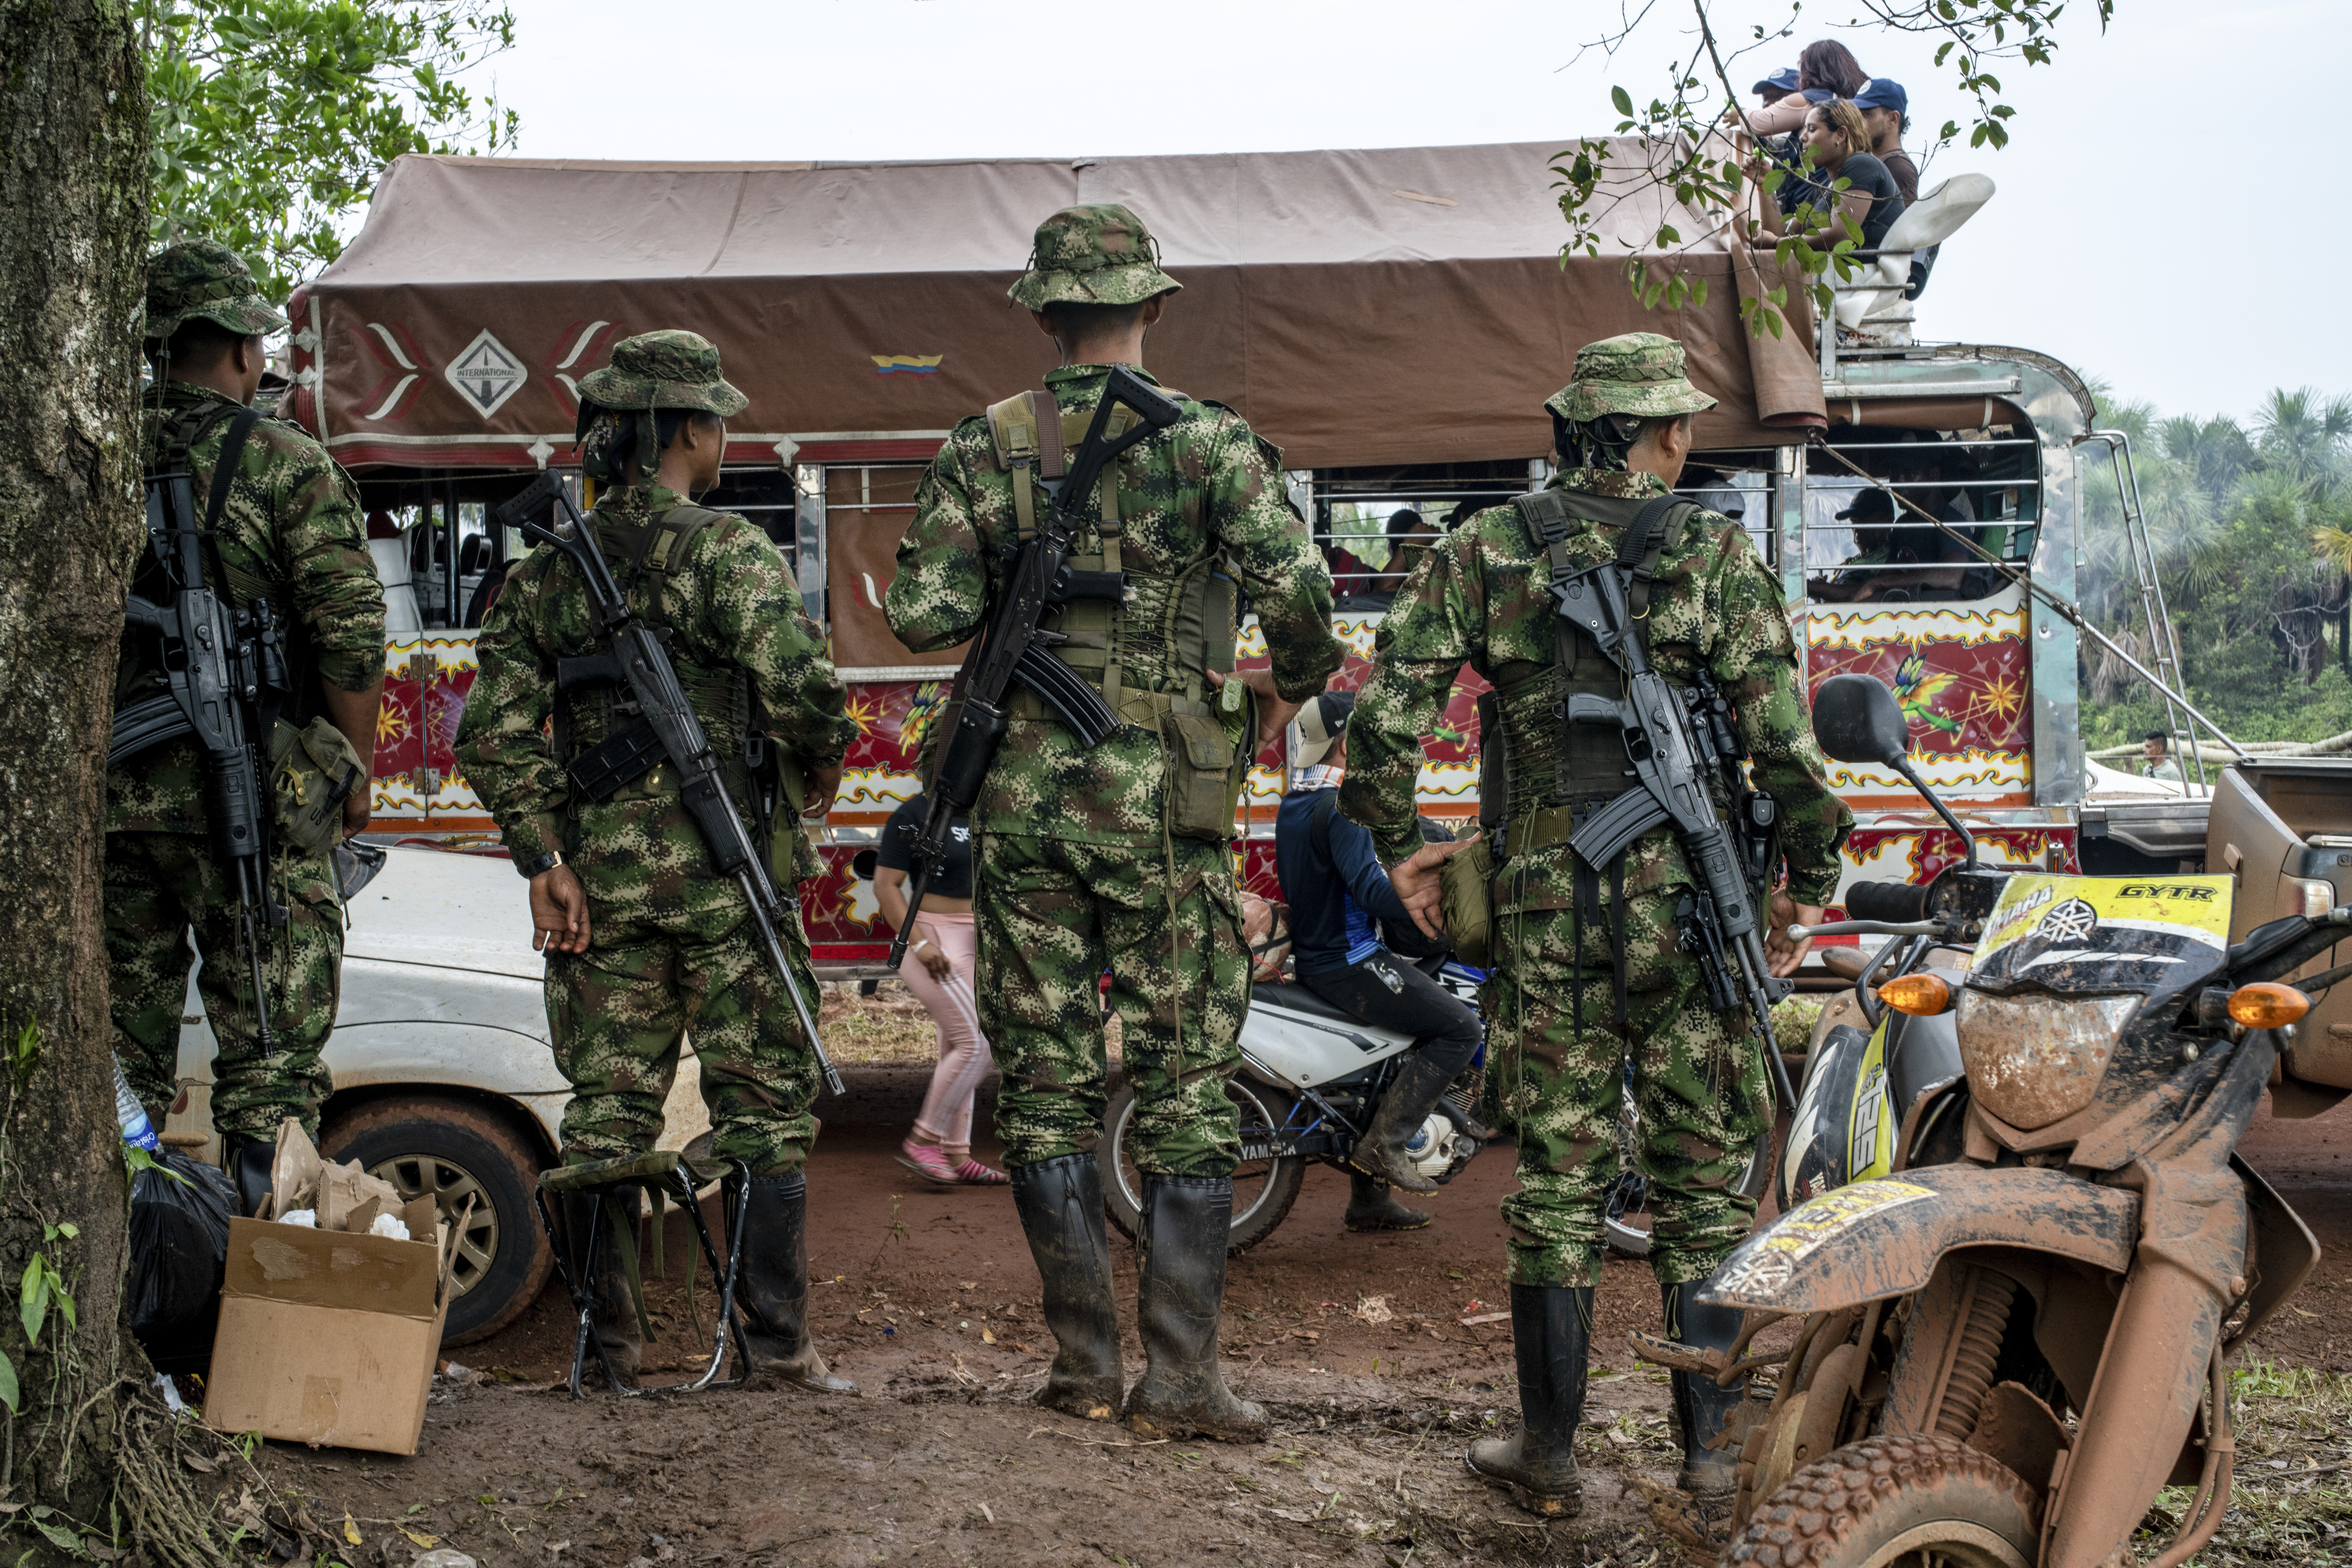 Los niños rescatados en la selva colombiana habían estado huyendo de los grupos armados